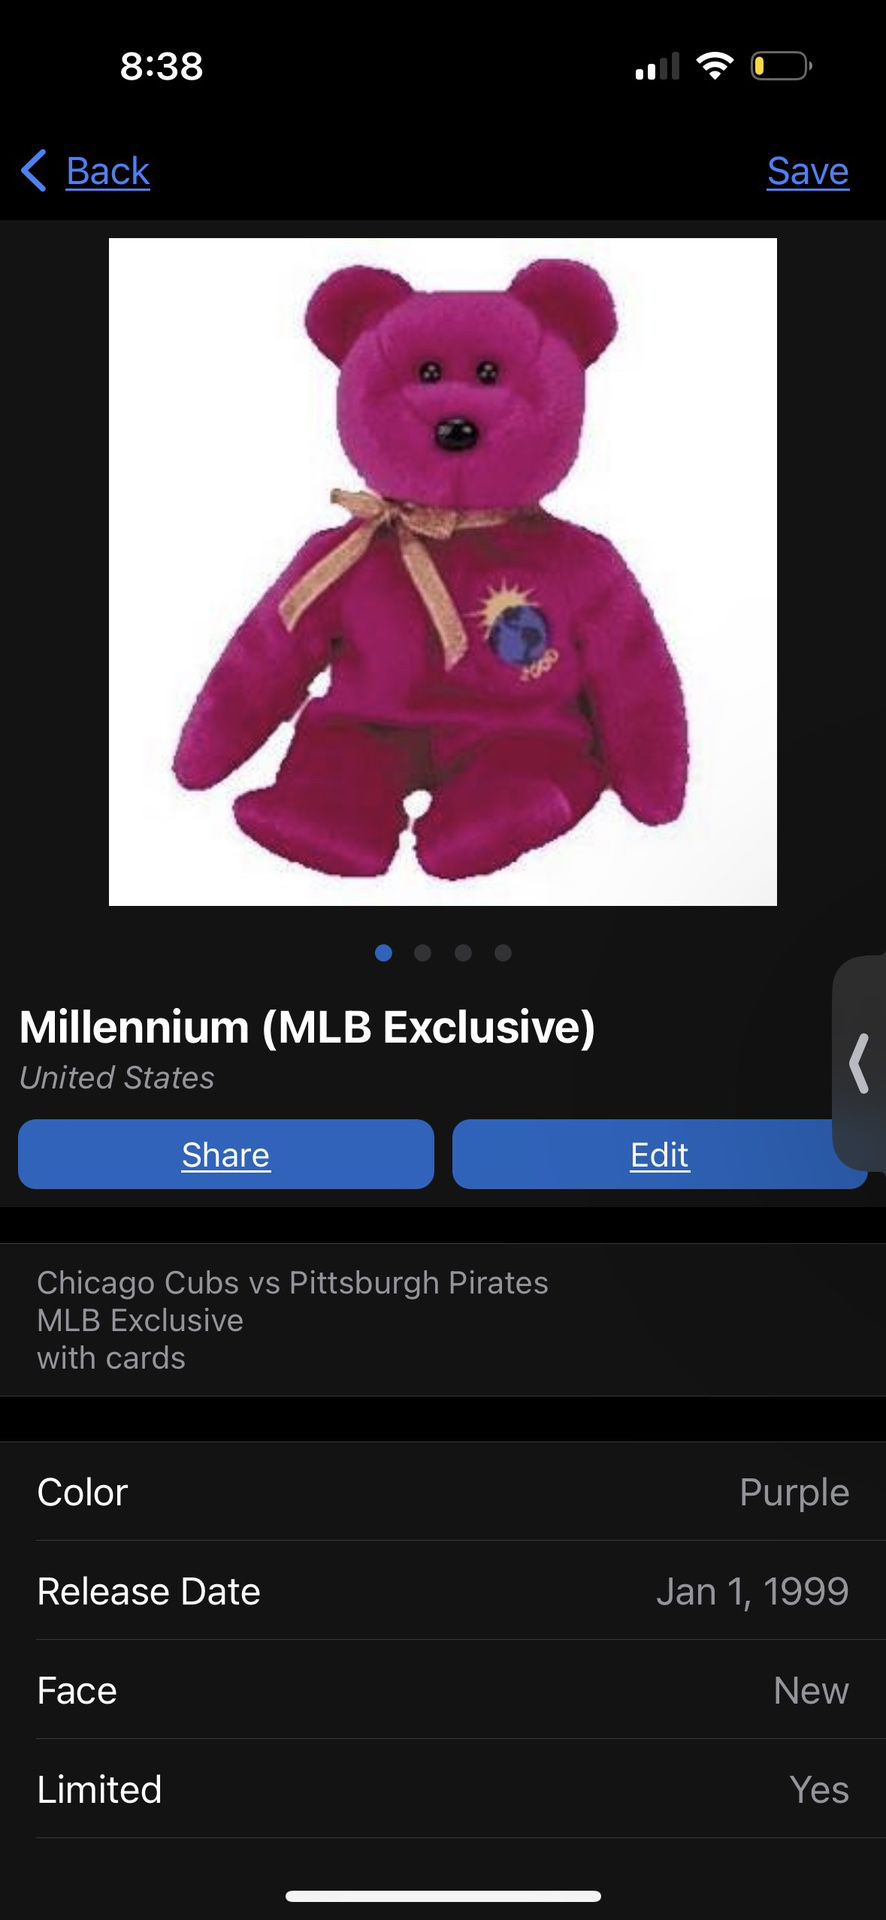 Millennium (MLB Exclusive) 1999